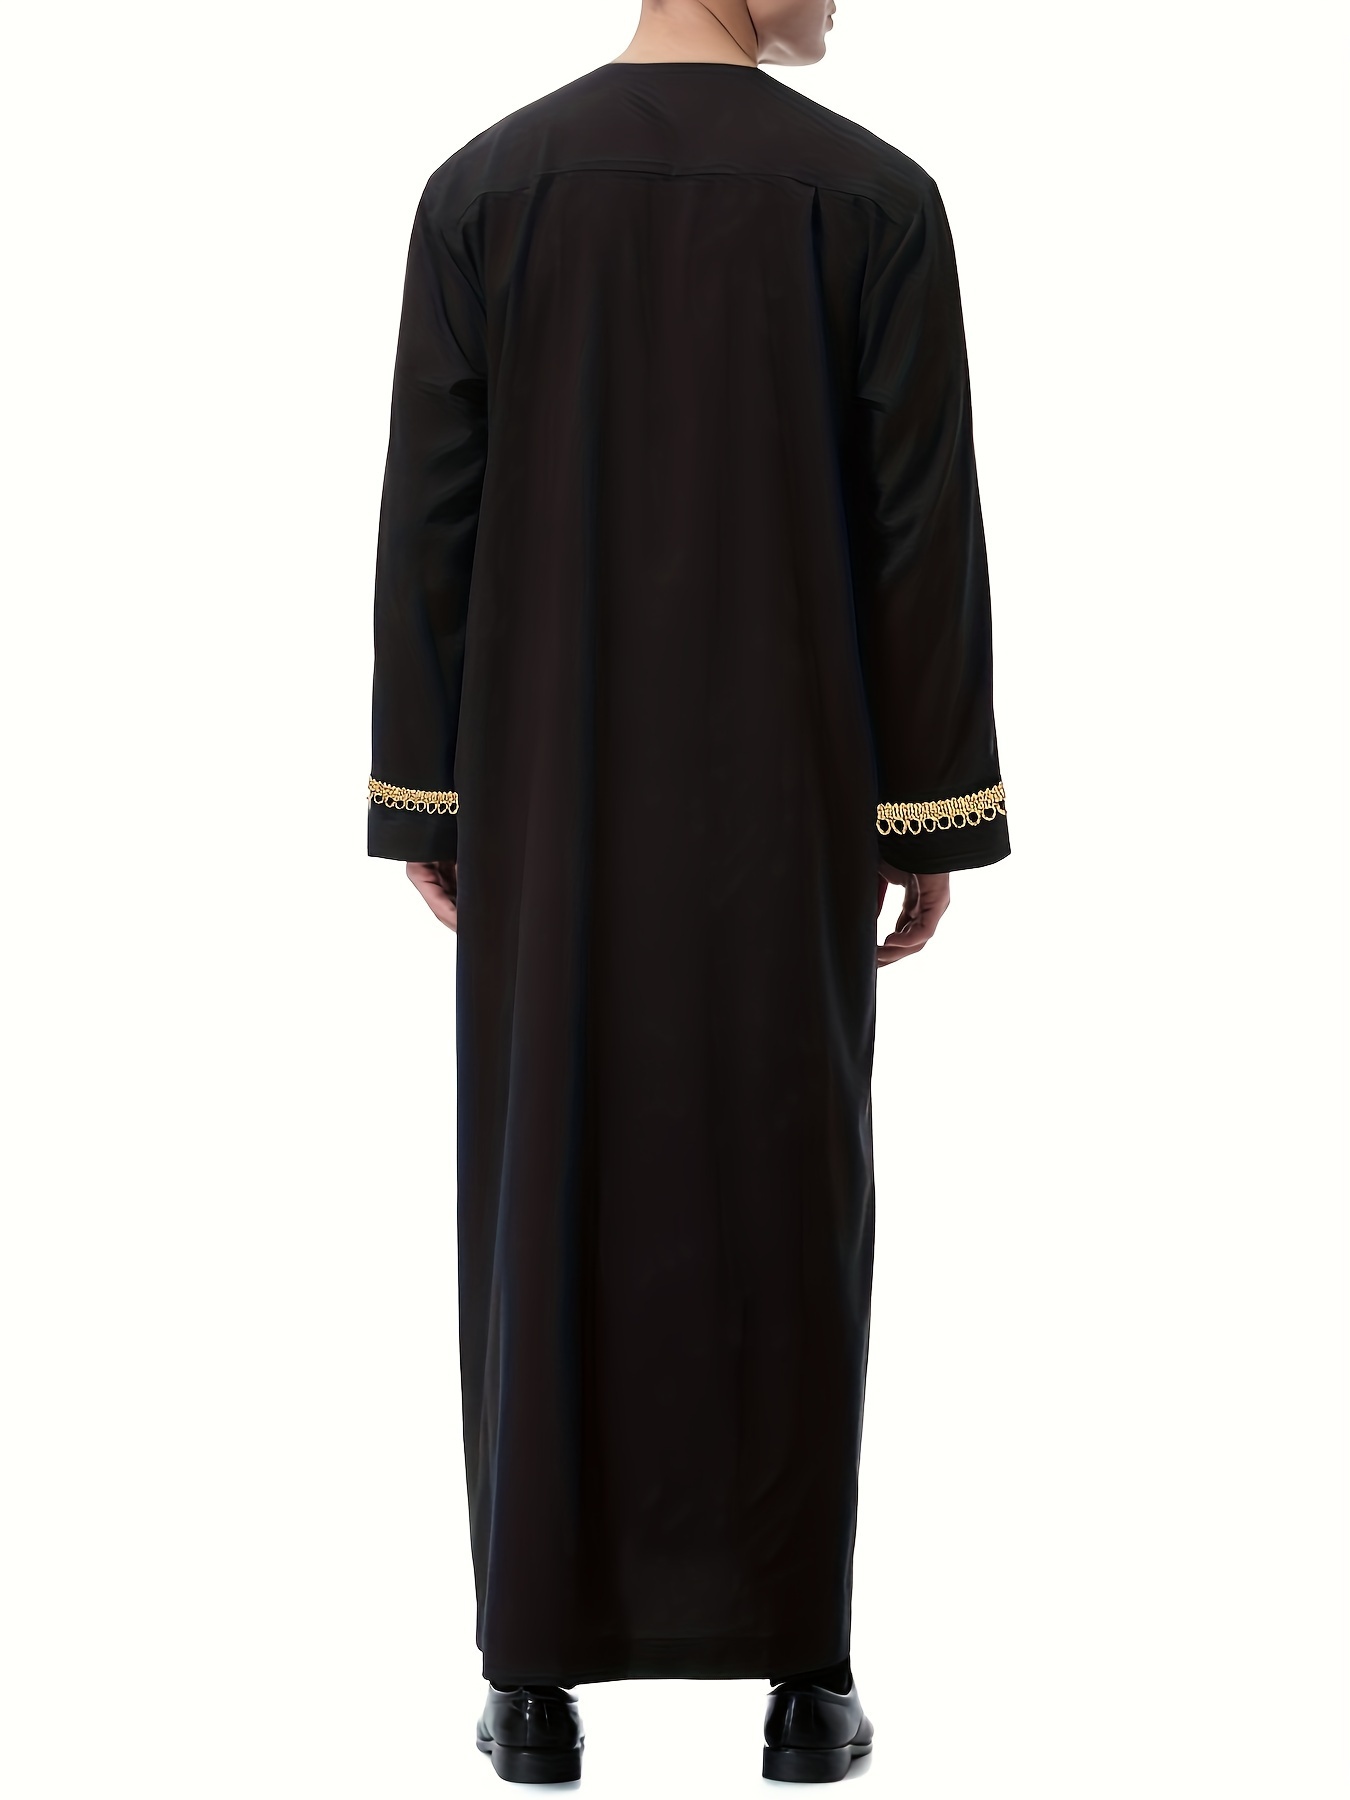 Thobă arabă saudită pentru bărbați în timpul Ramadanului, cu mâneci lungi, Kandora, îmbrăcăminte pentru Ramadan, Ramadan, Eid Al Adha